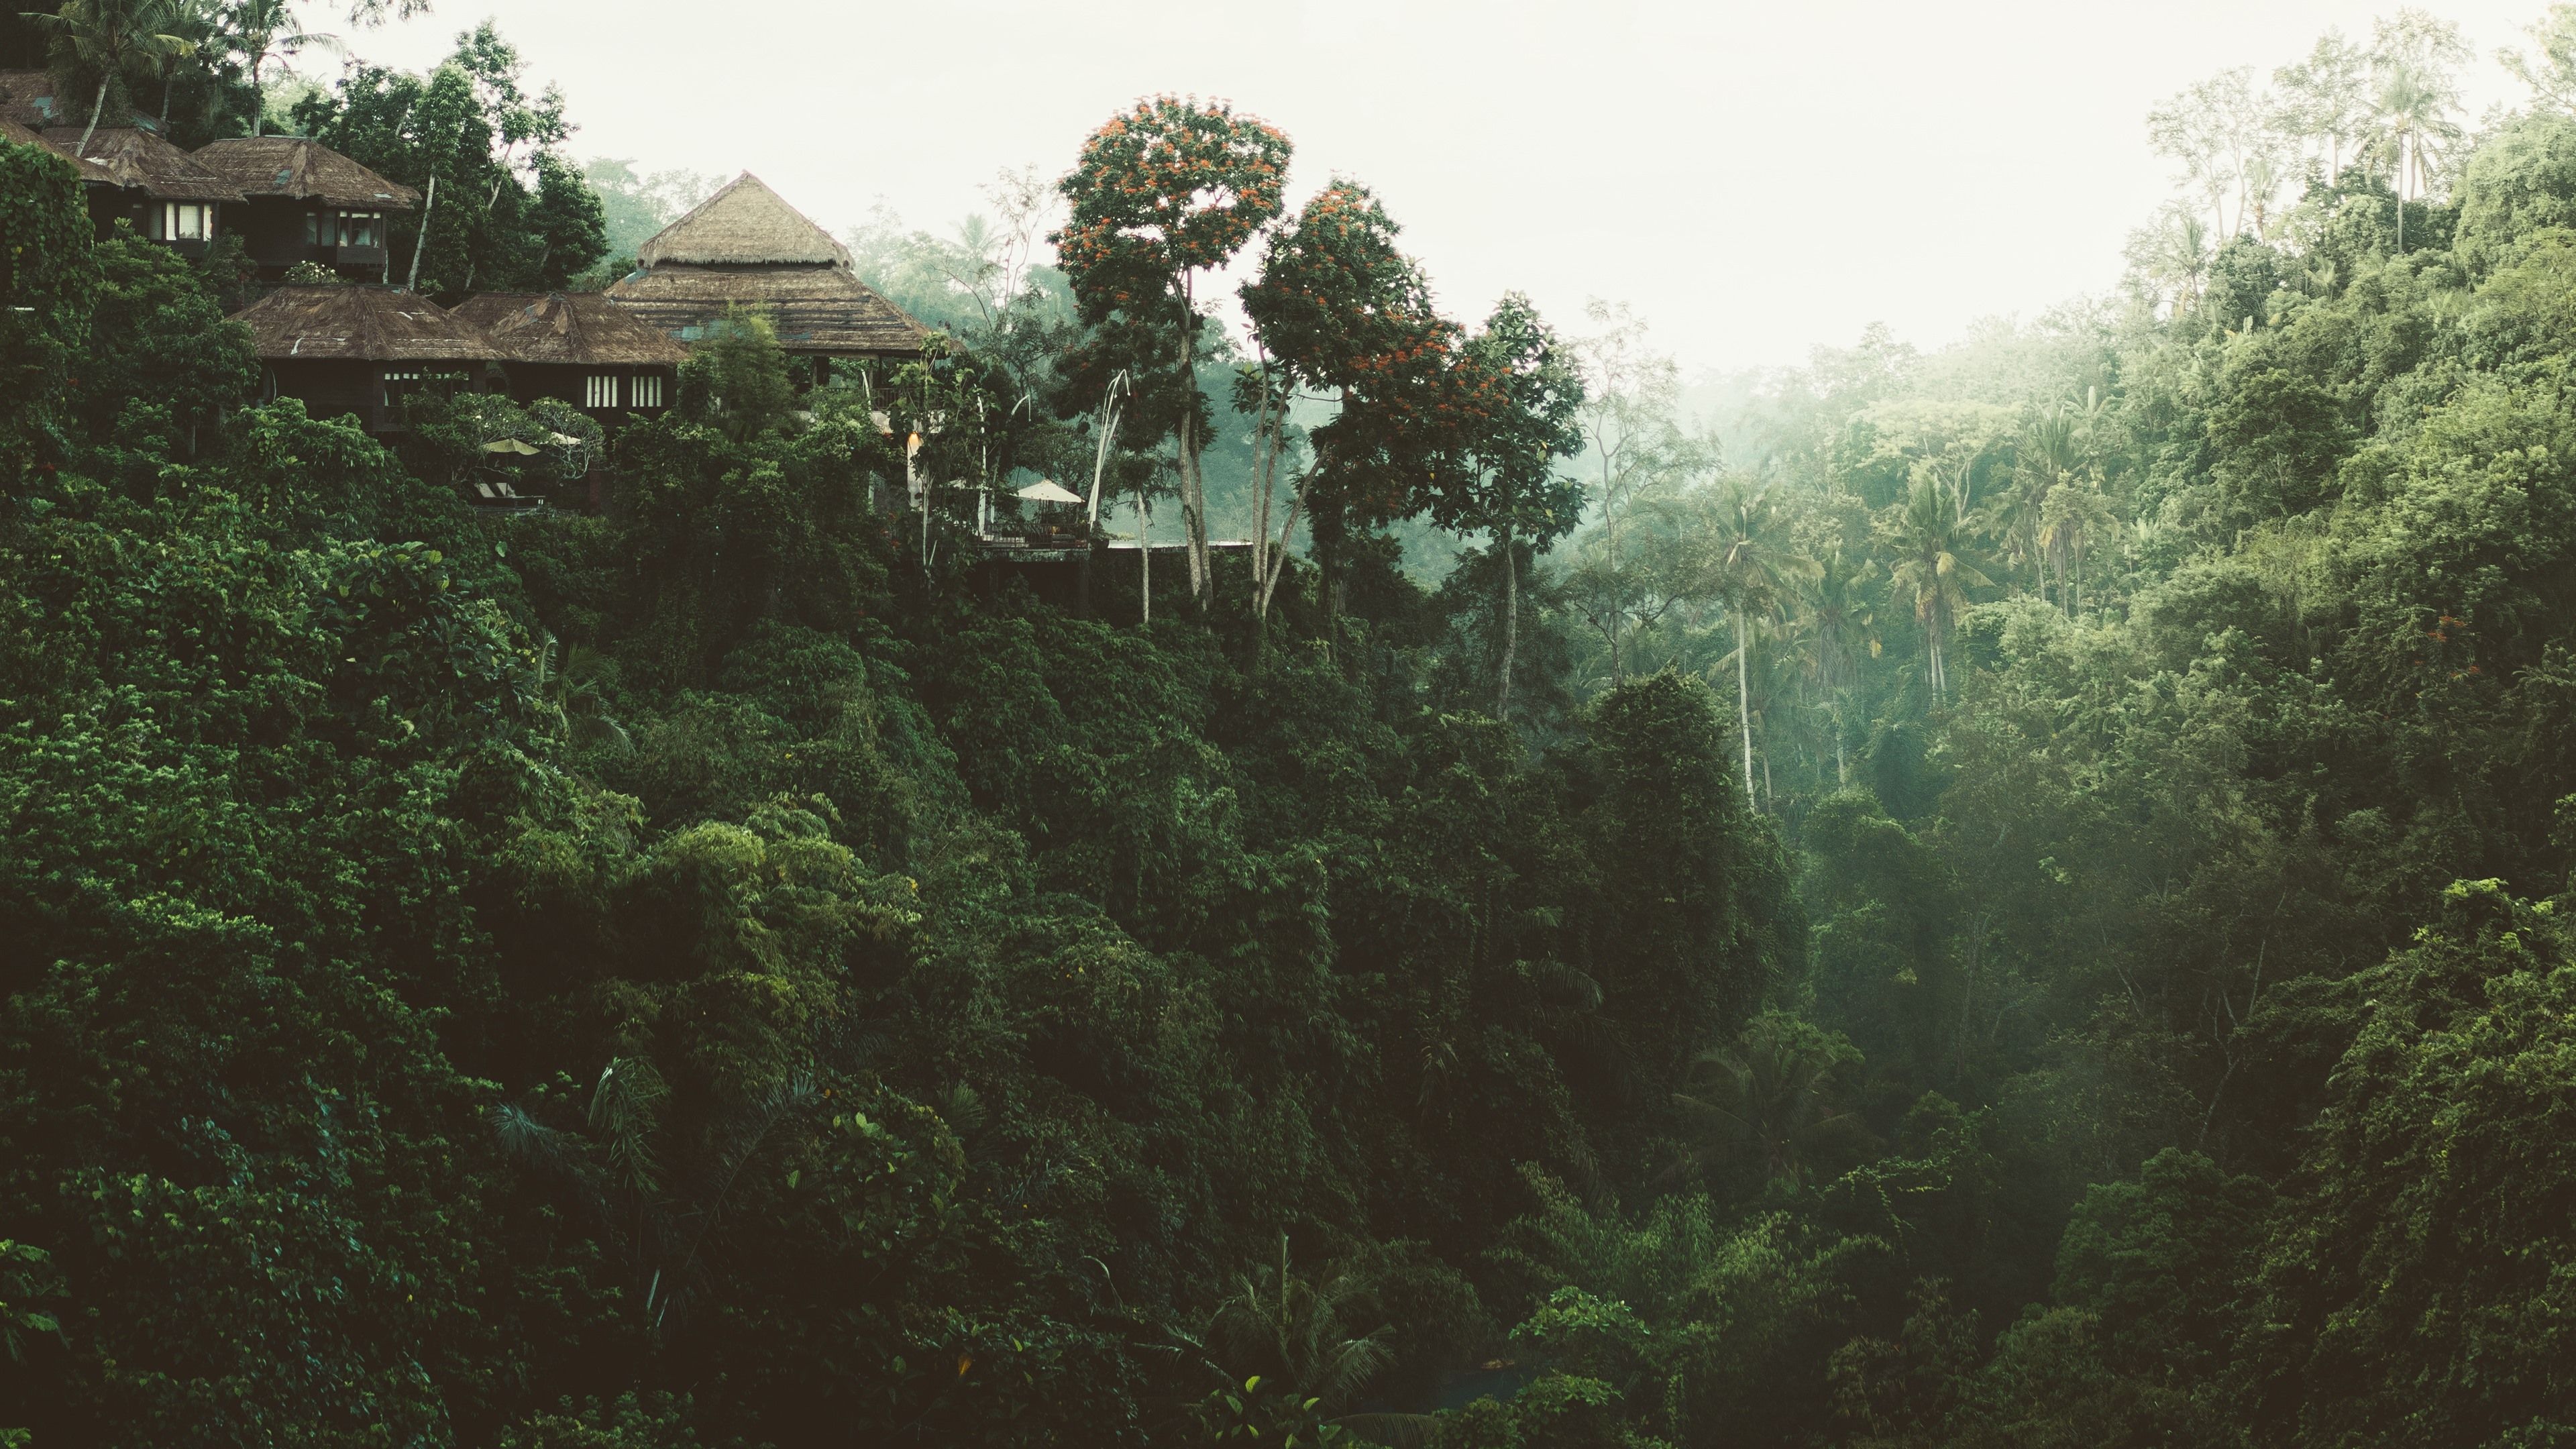 Dschungel Hintergrundbild 3840x2160. Dschungel, Bäume, Haus 3840x2160 UHD 4K Hintergrundbilder, HD, Bild